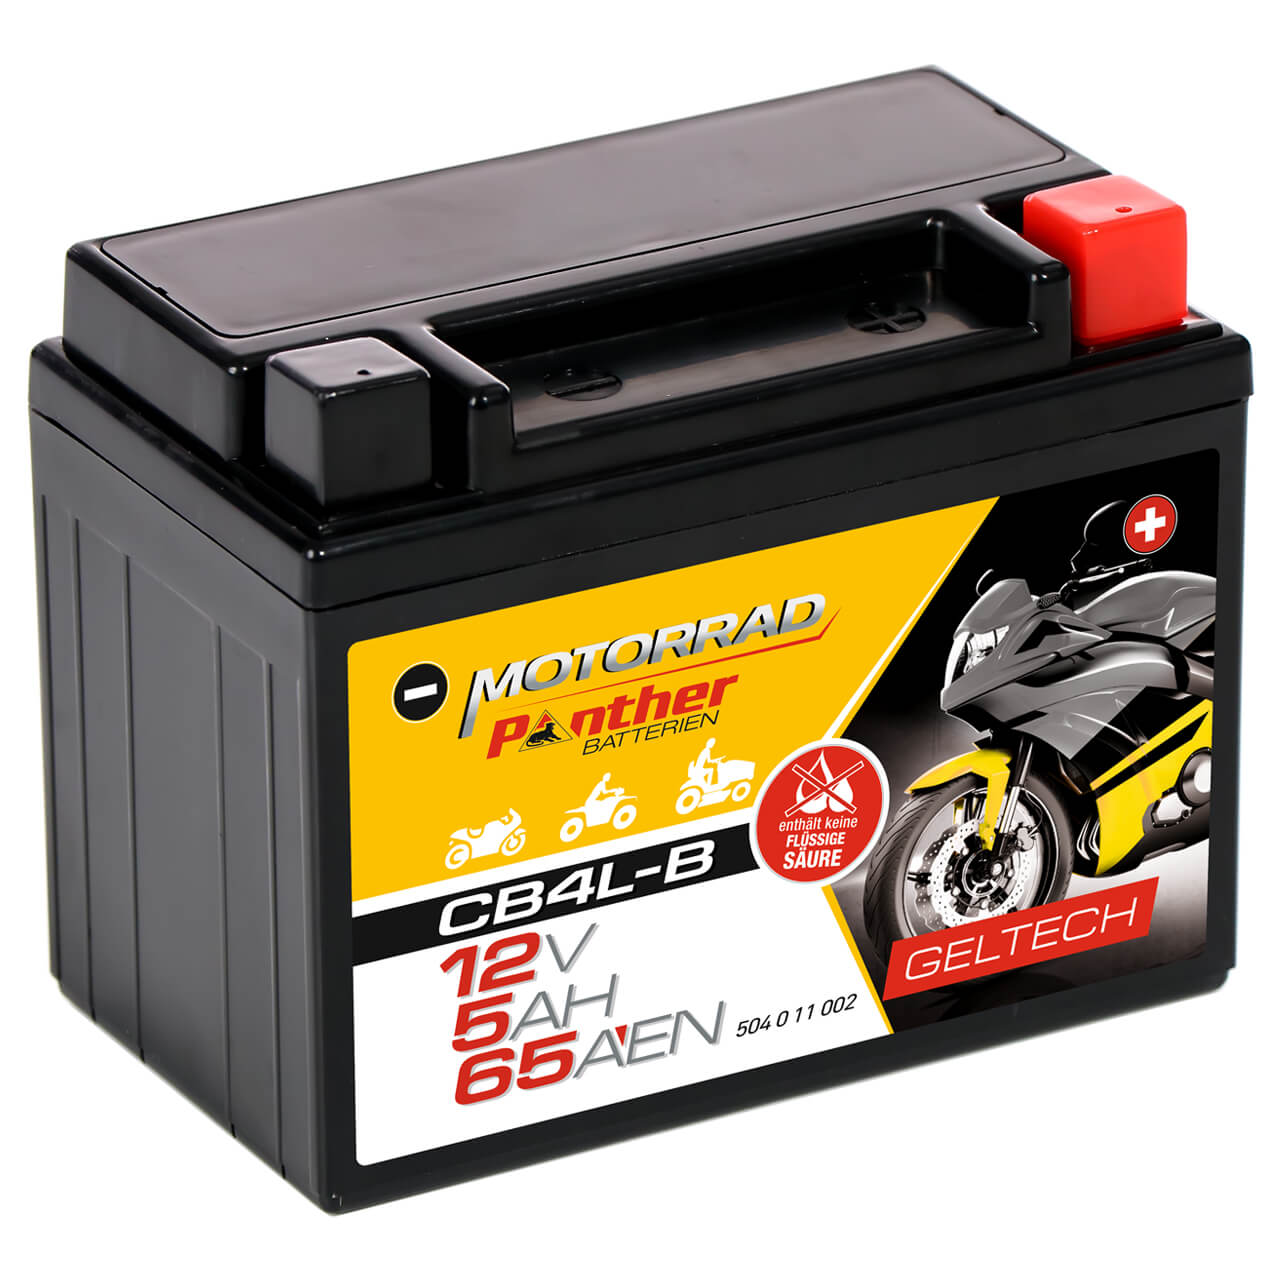 Motorradbatterie Panther GEL CB4L-B 50411 12V 5Ah Seite links